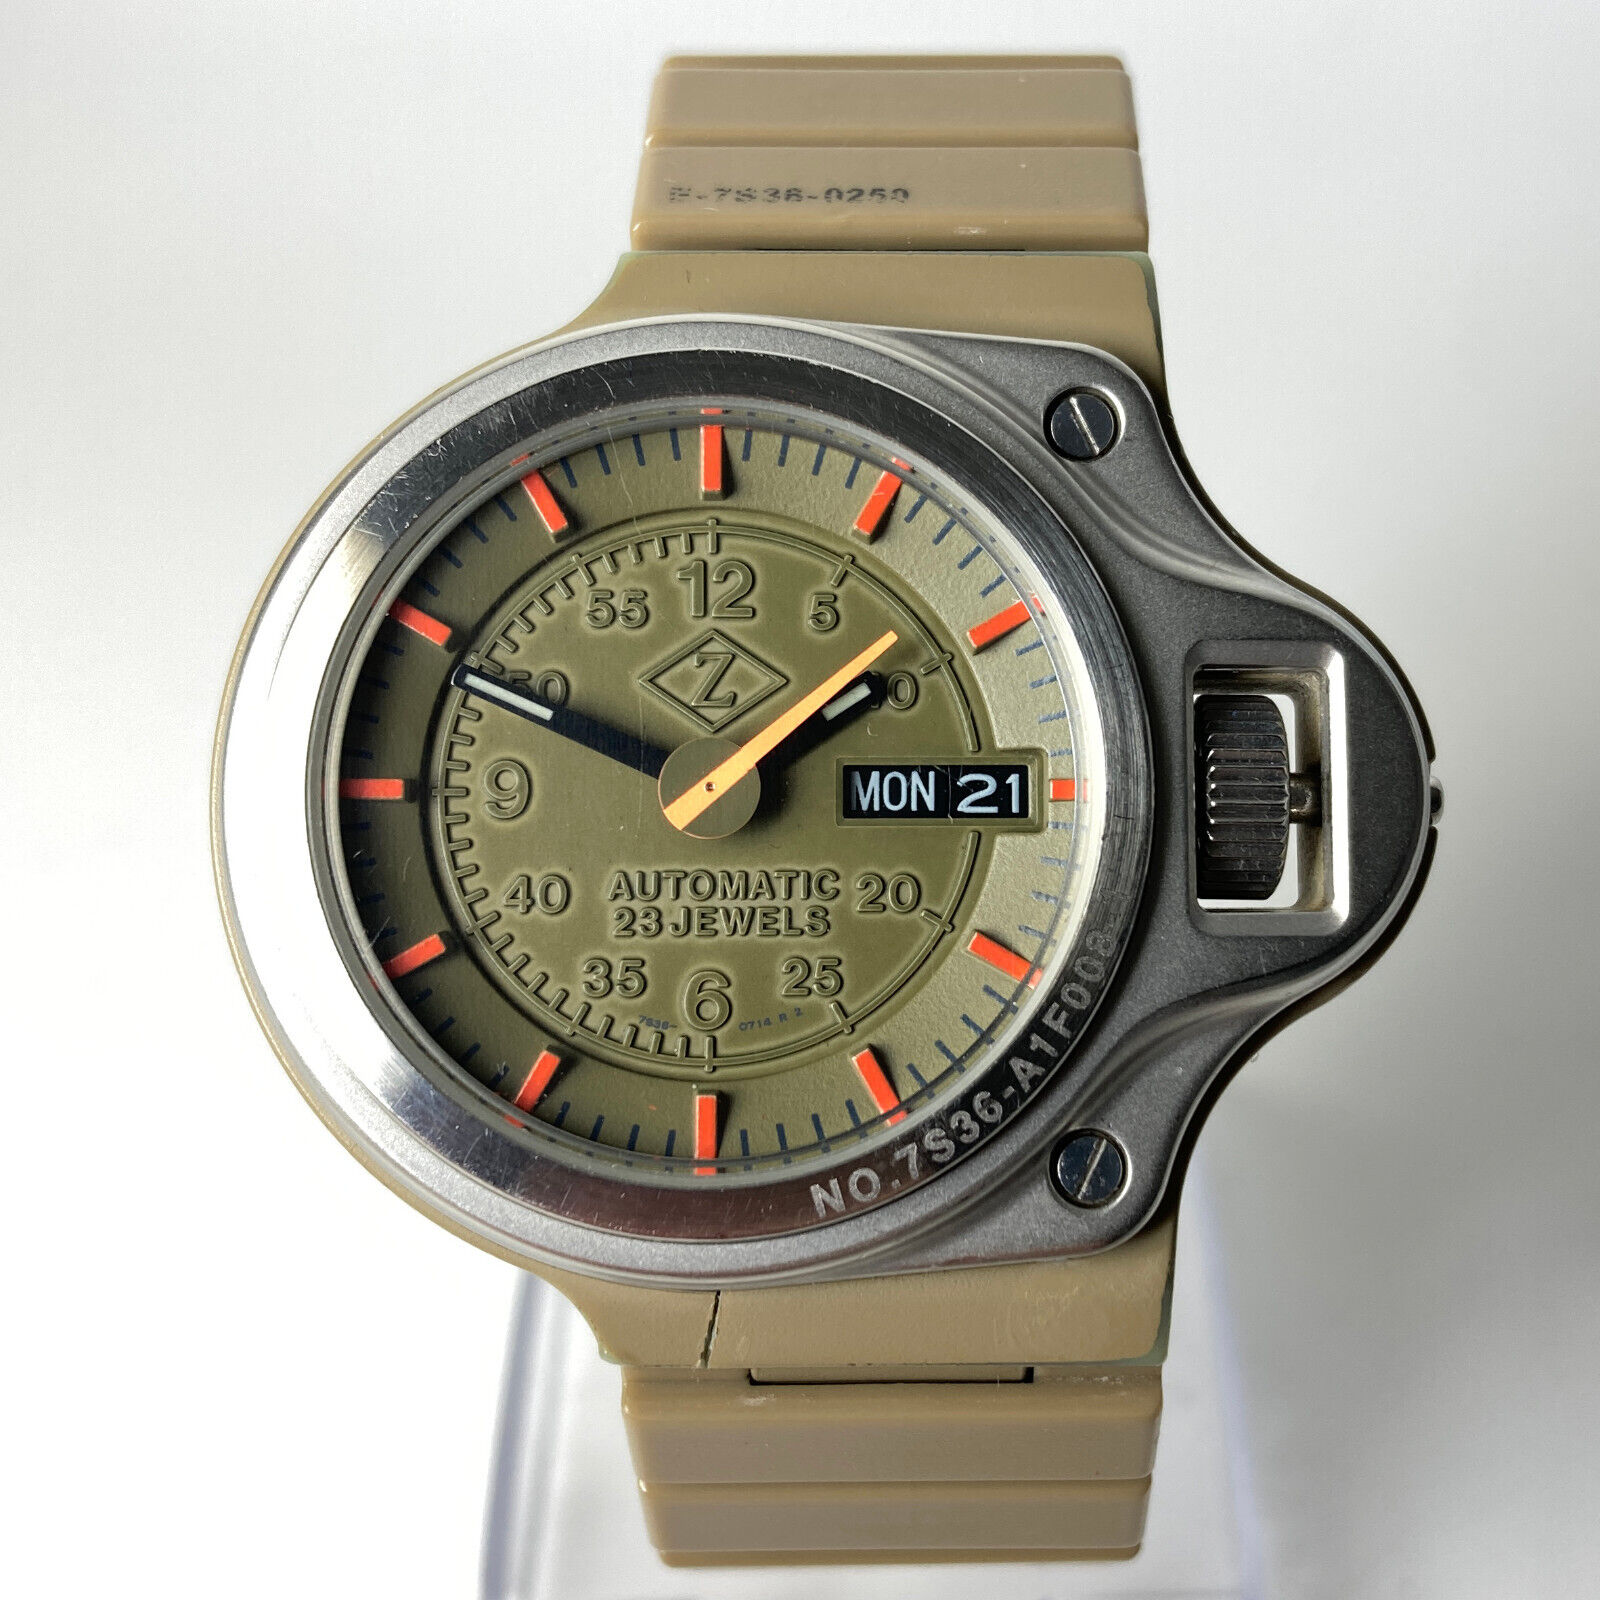 Seiko X Cabane de Zucca Dashboard Automatic Watch 7S36-0250 japan 